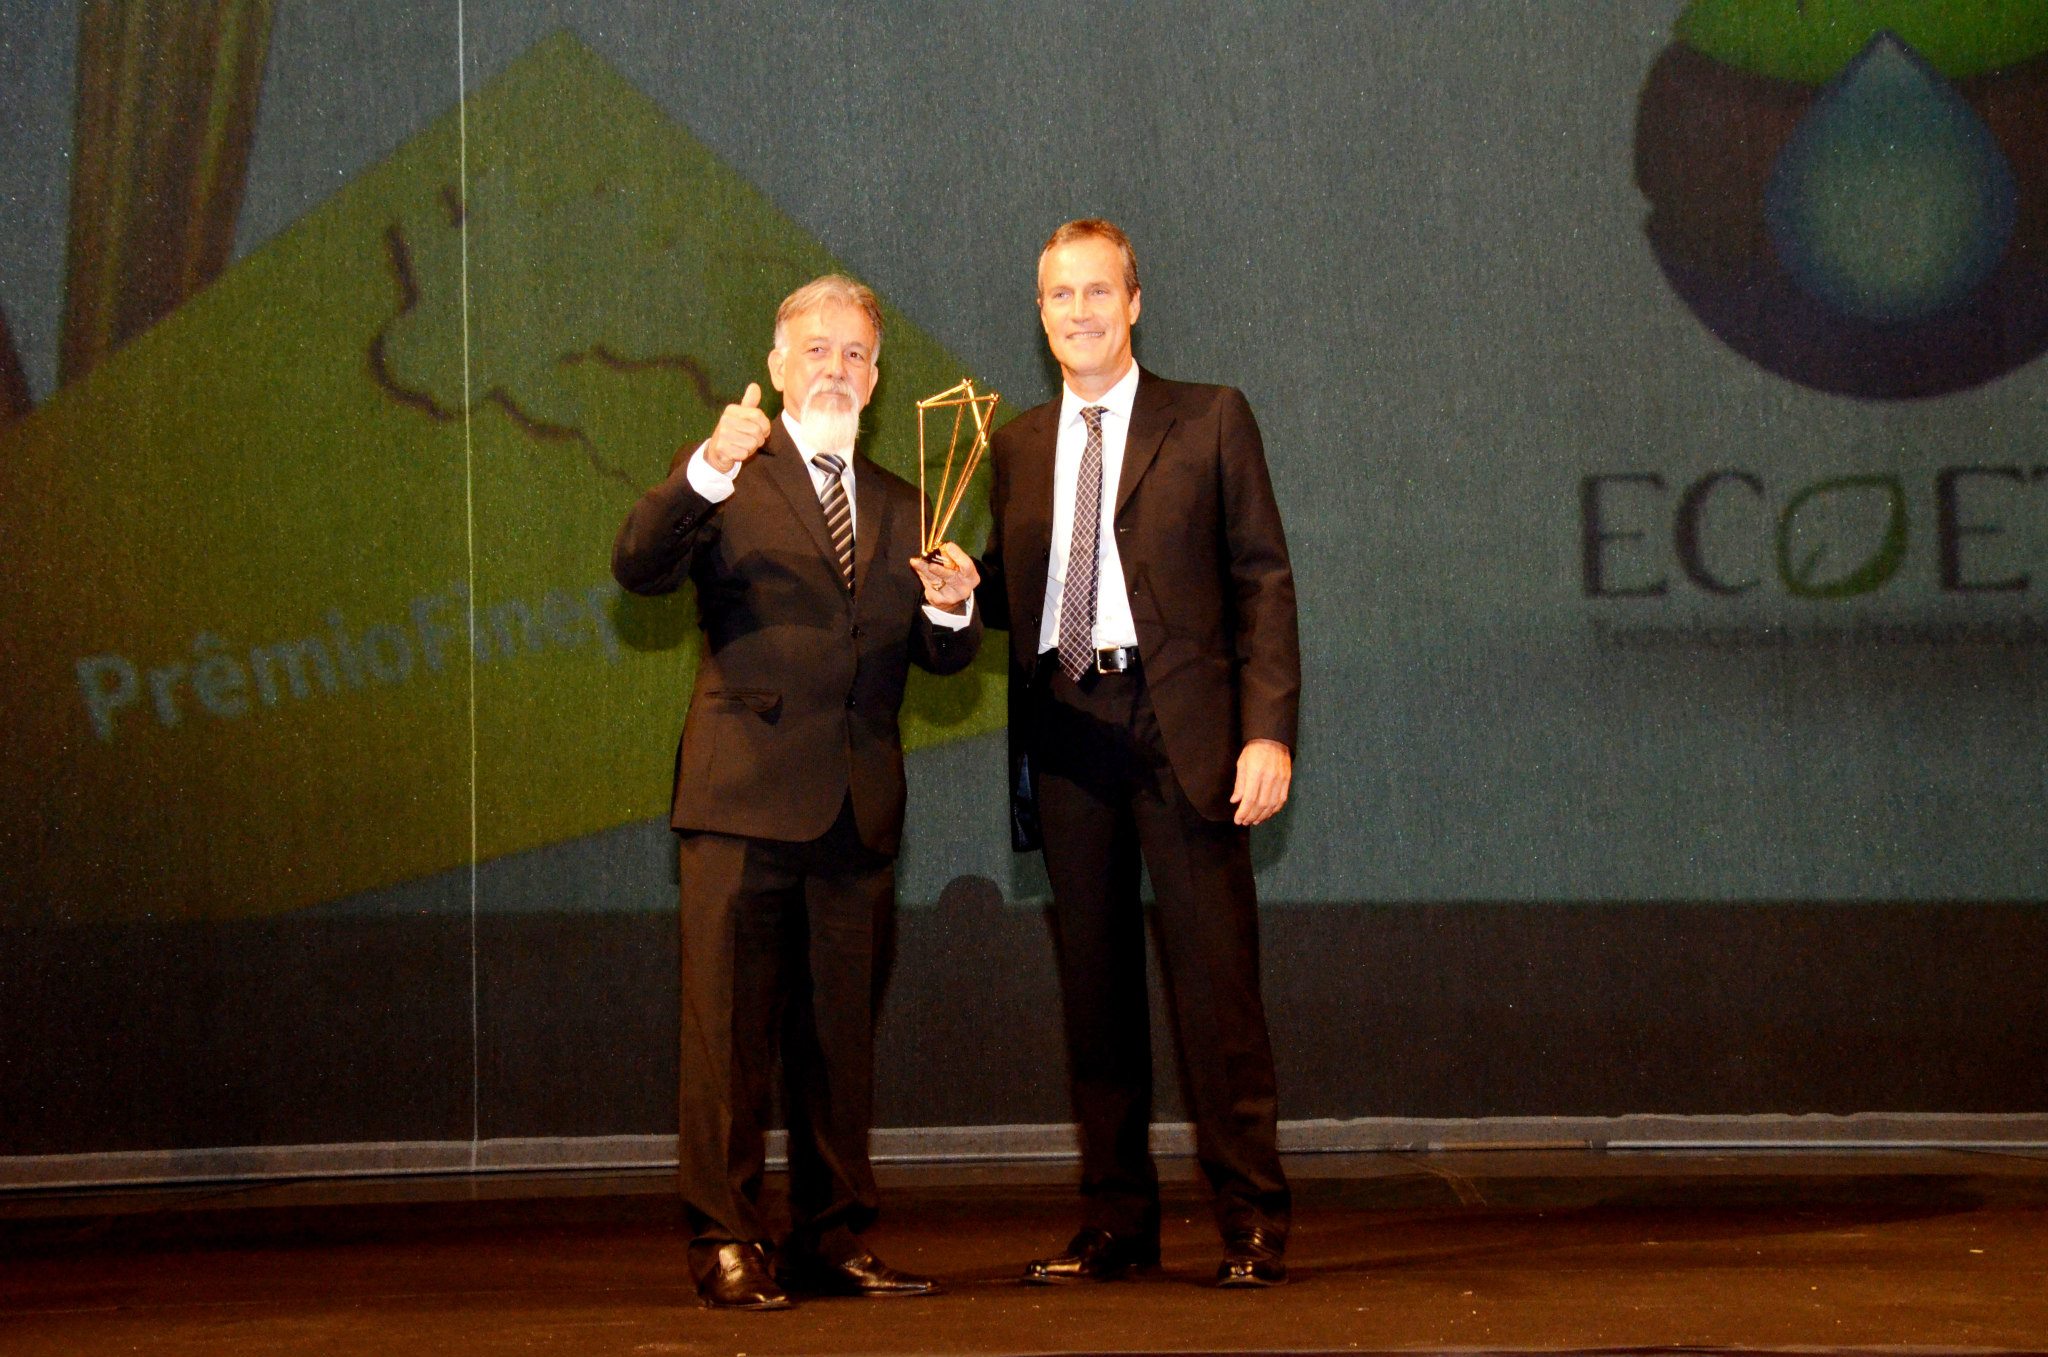 Fernando Ribeiro entrega troféu a Antônio Bento Neto, representante da Ecoete